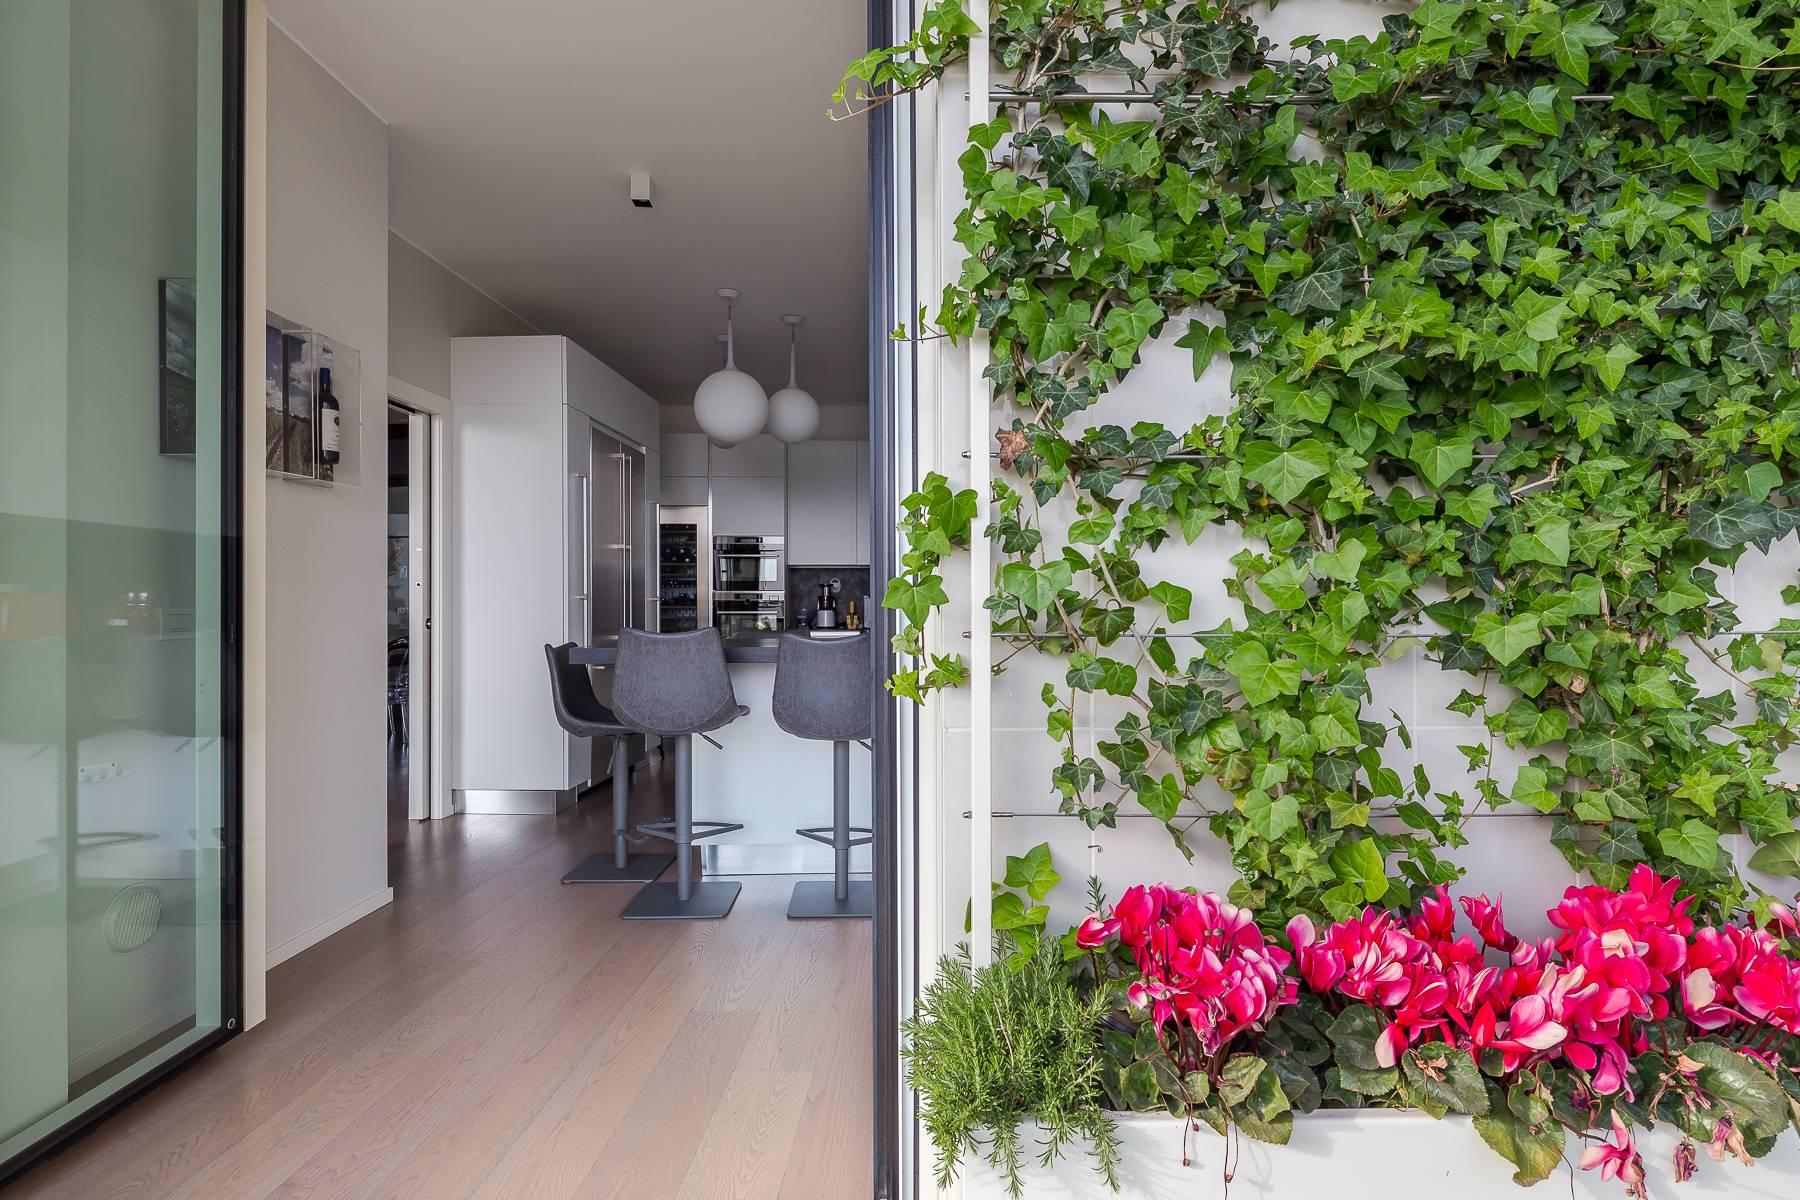 Wunderschöne möblierte Design-Wohnung mit Terrassen im CitylIfe Stadtviertel - 37